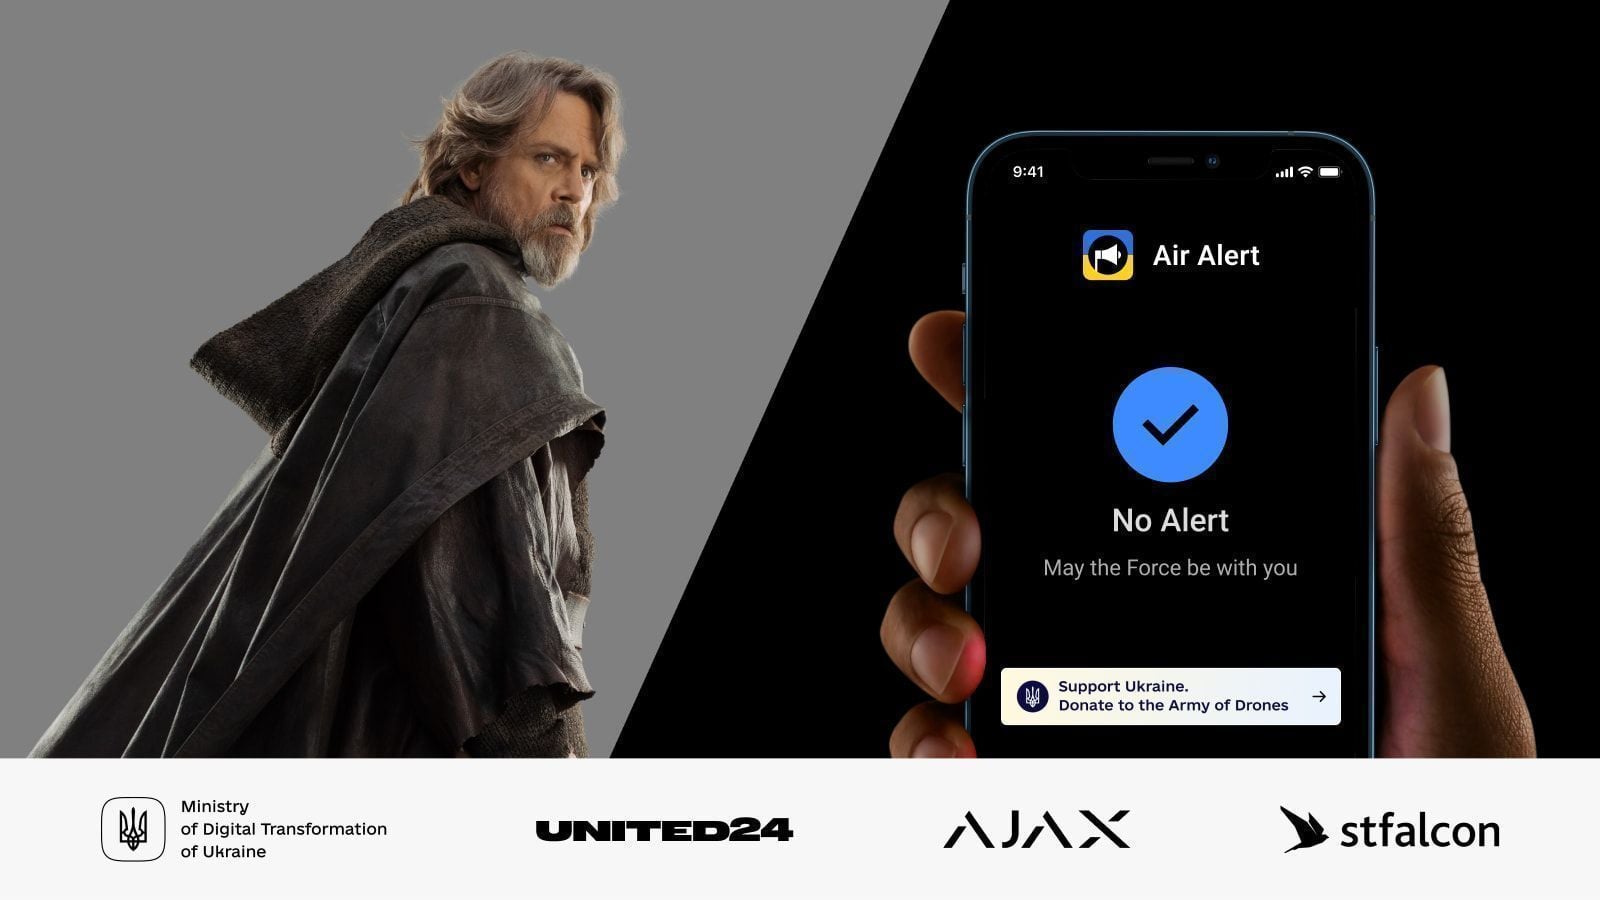 Mise à jour Jedi de l'application Air Alert